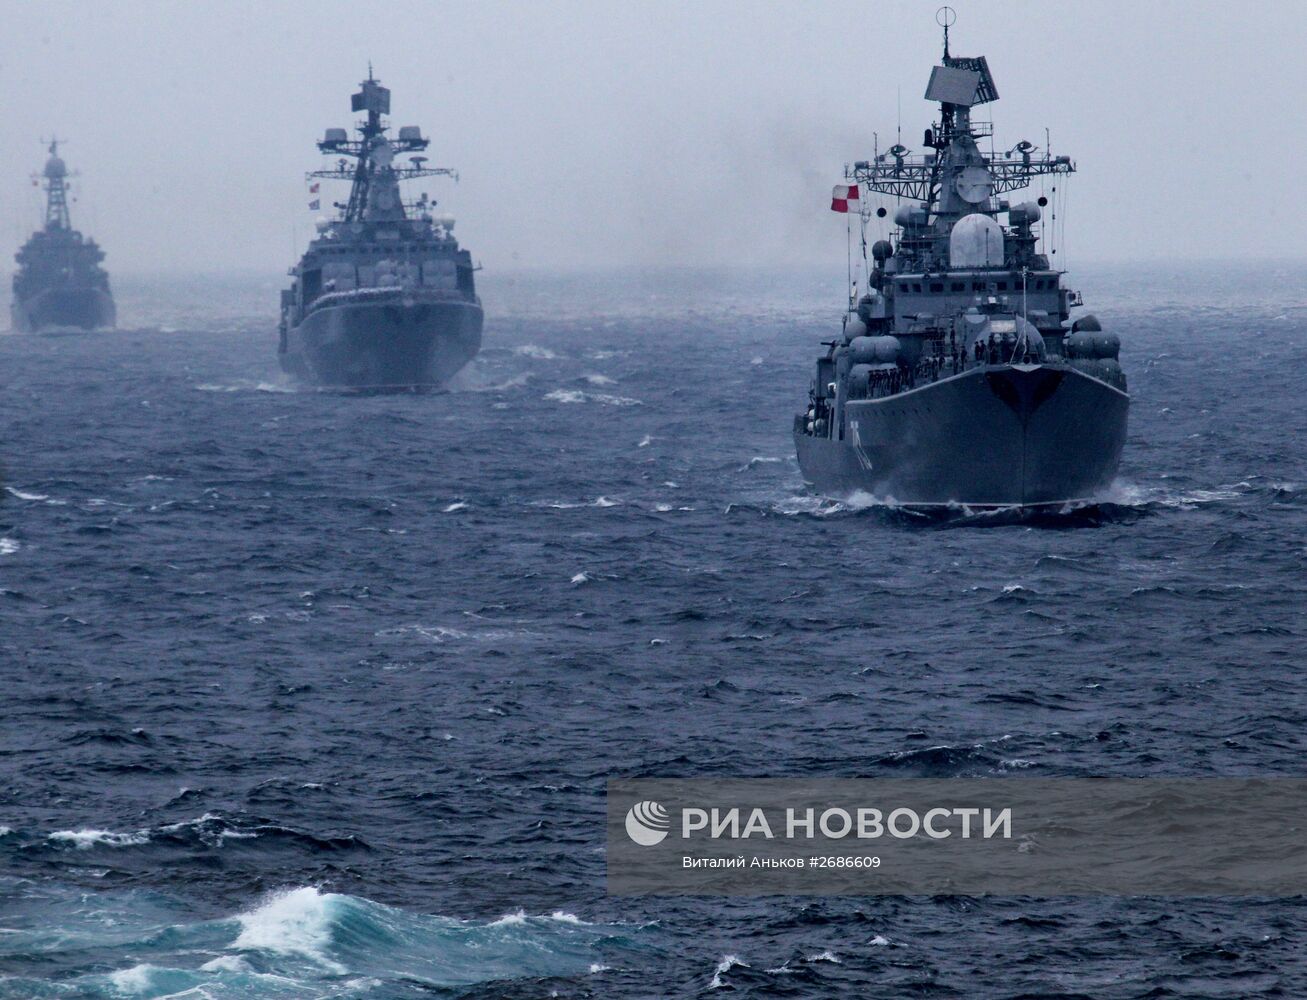 Российско-китайские учения "Морское взаимодействие-2015" во Владивостоке